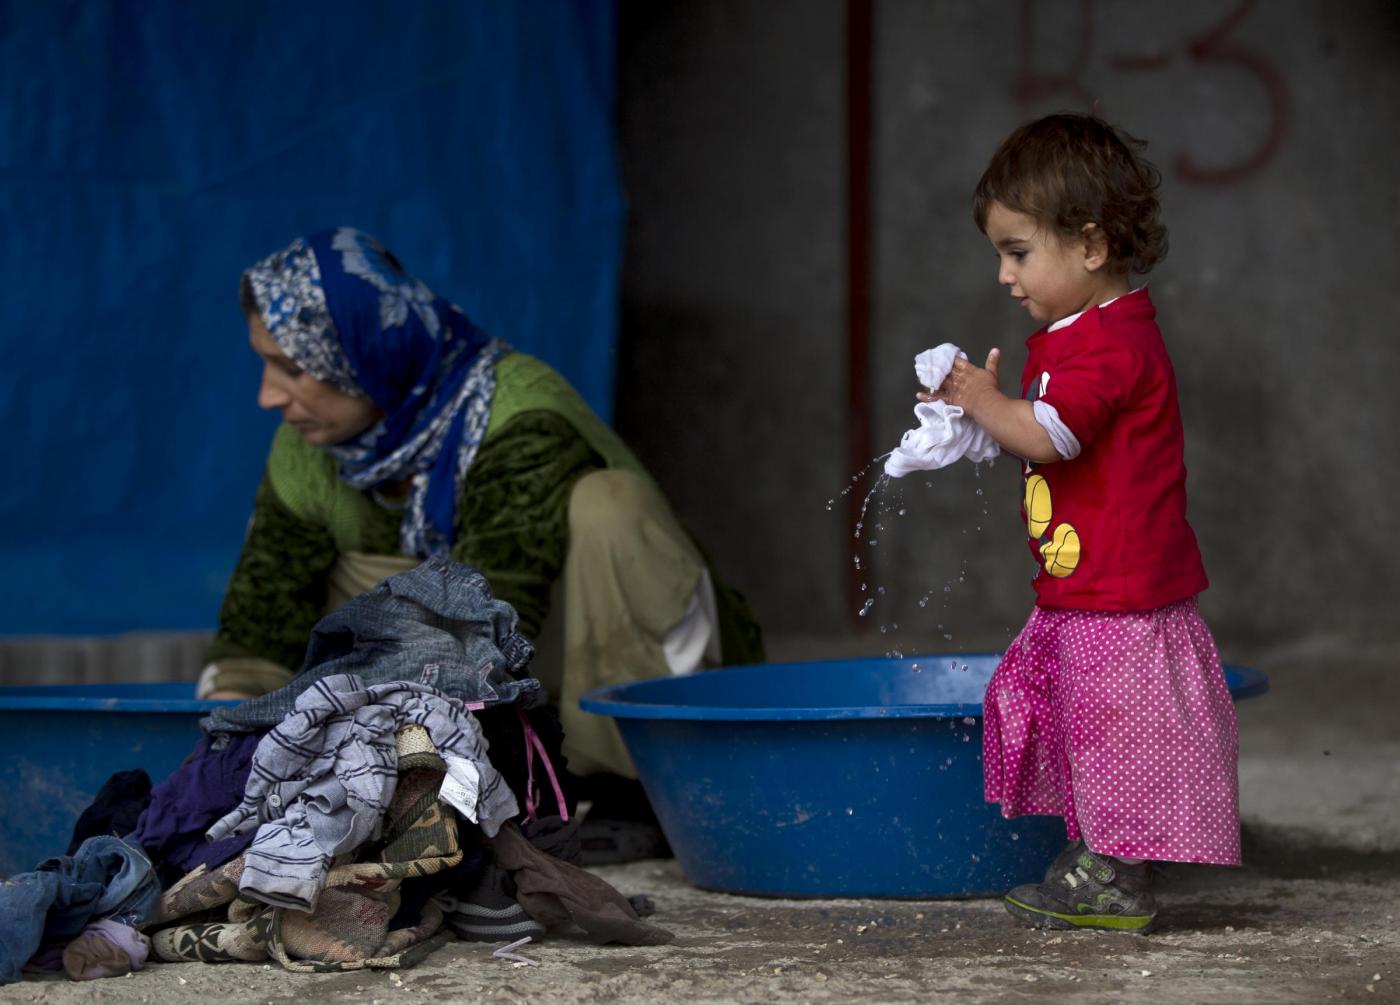 Siriani in un campo profughi al confine con la Turchia